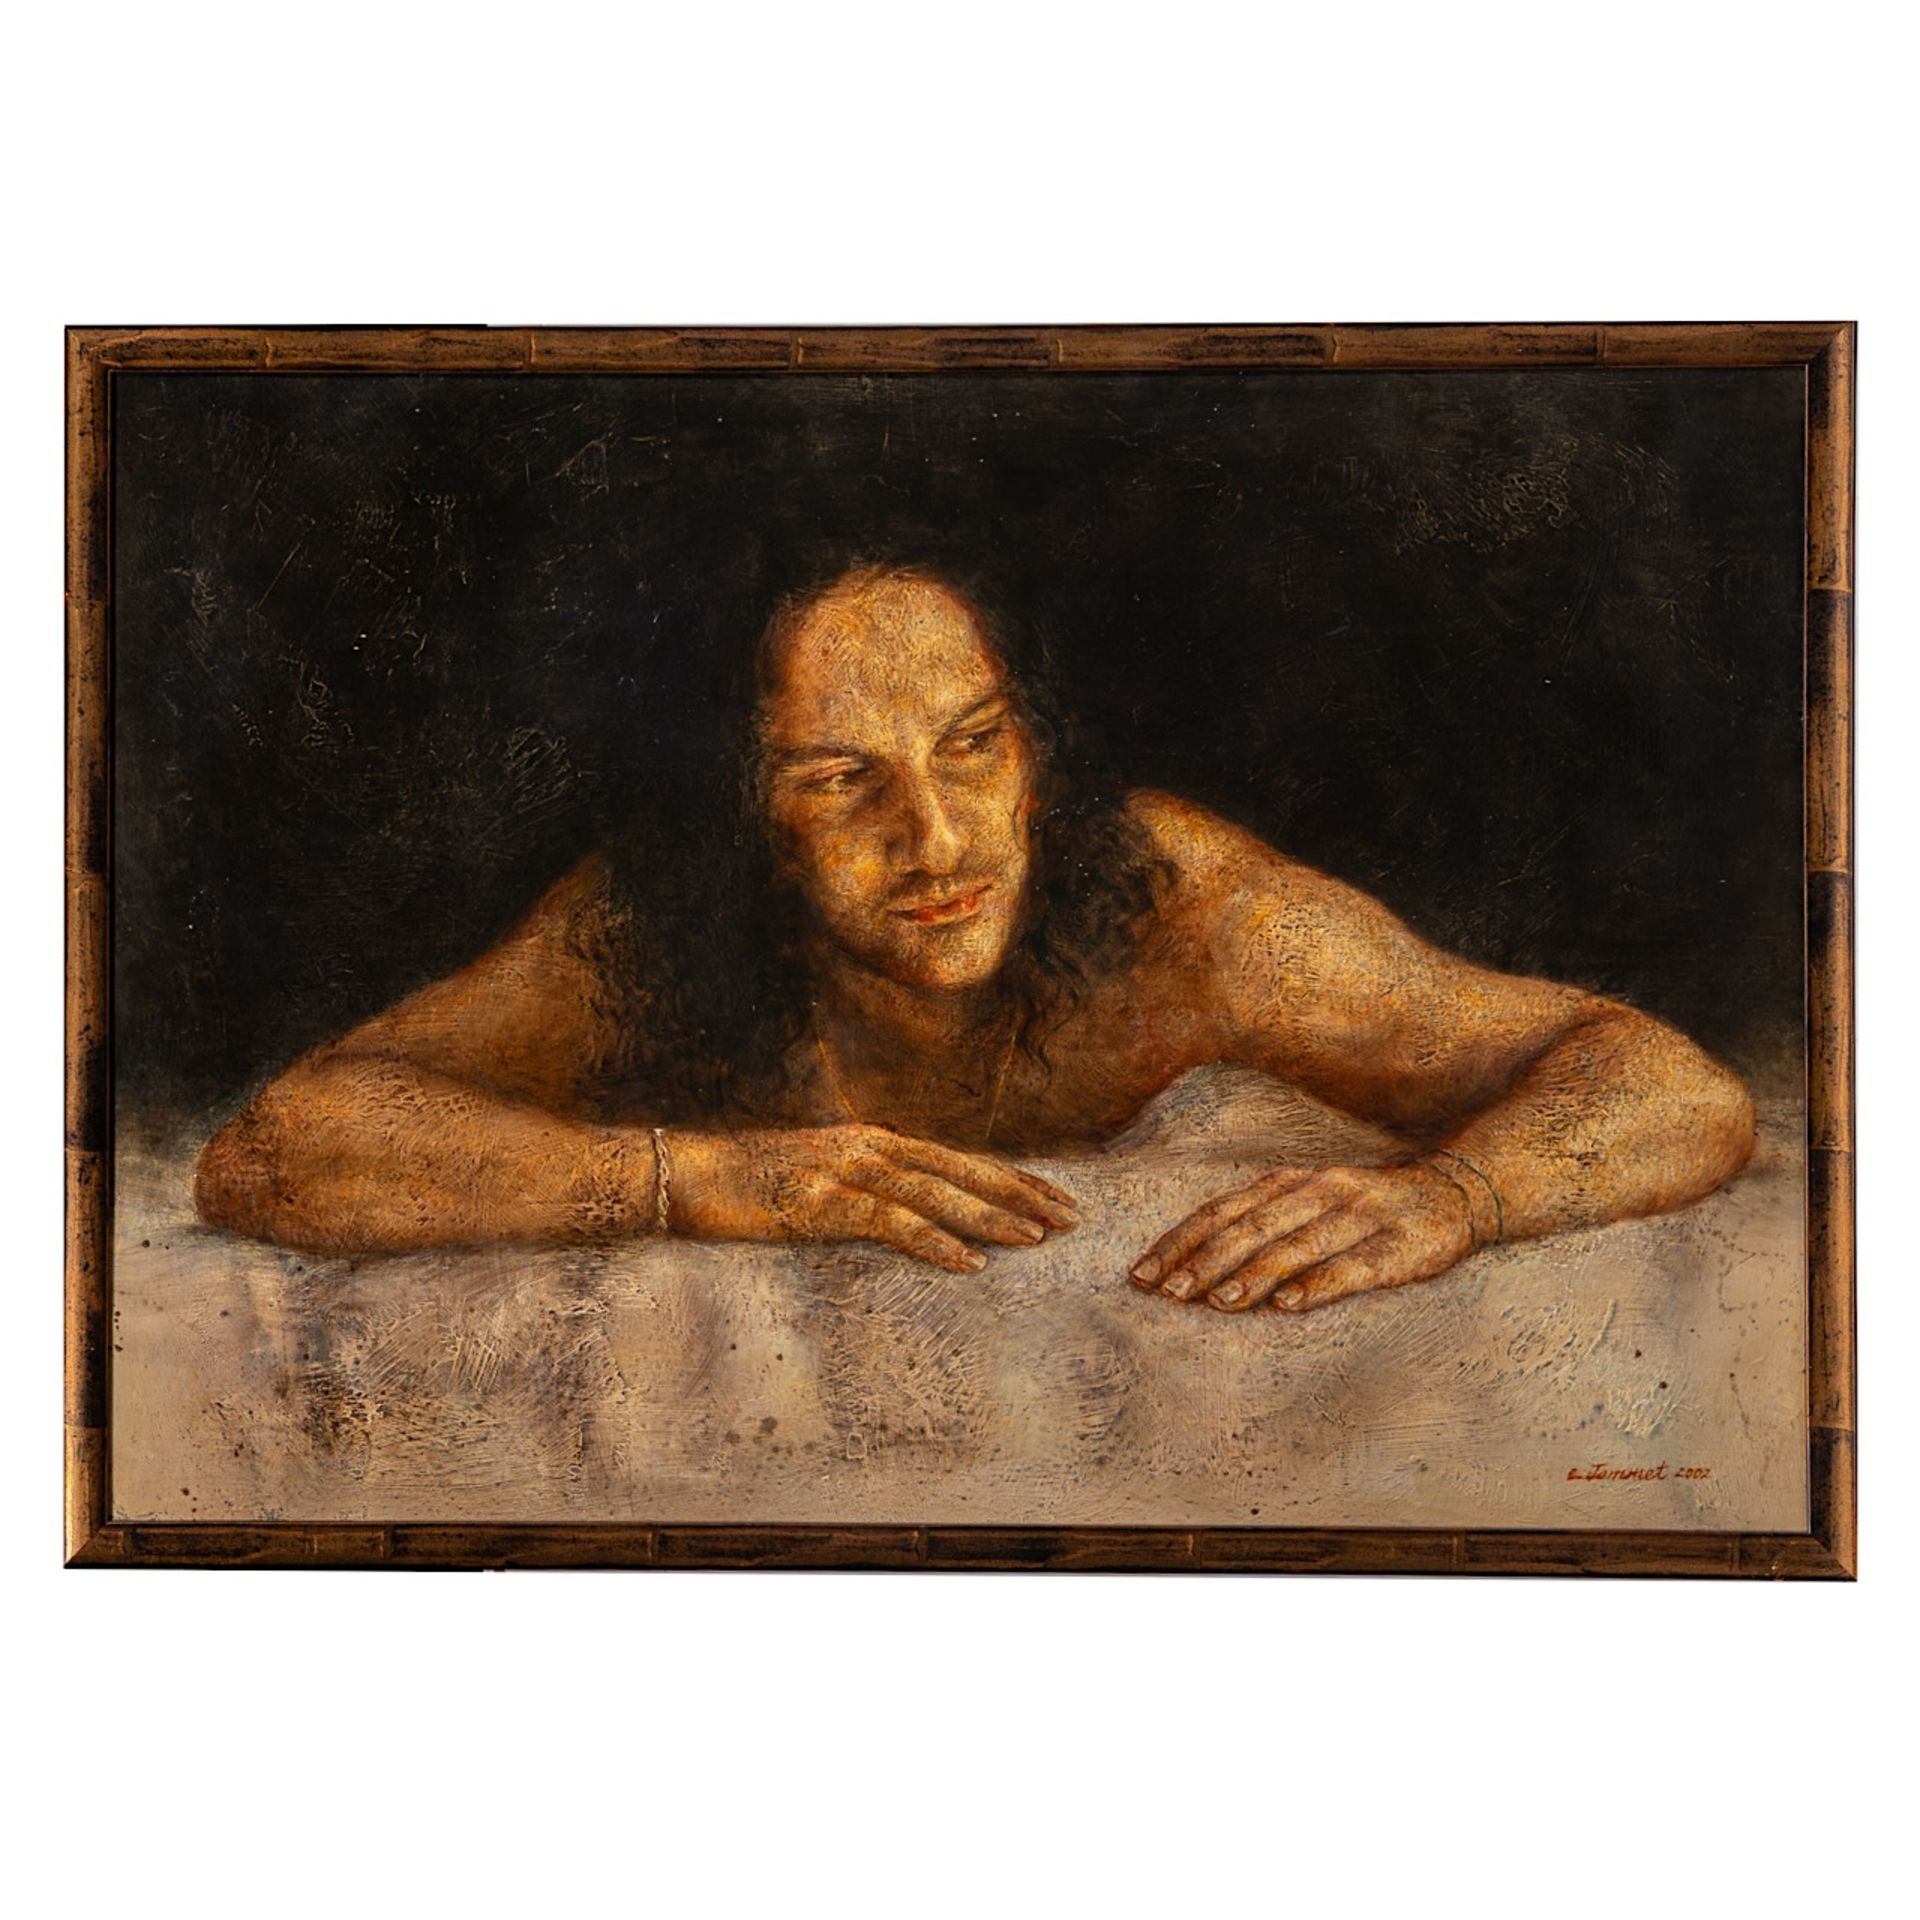 Claude Jammet (1953), three untitled works, 2002, oil on canvas, 88 x 66 / 70 x 90 / 66 x 100 cm - Bild 11 aus 13